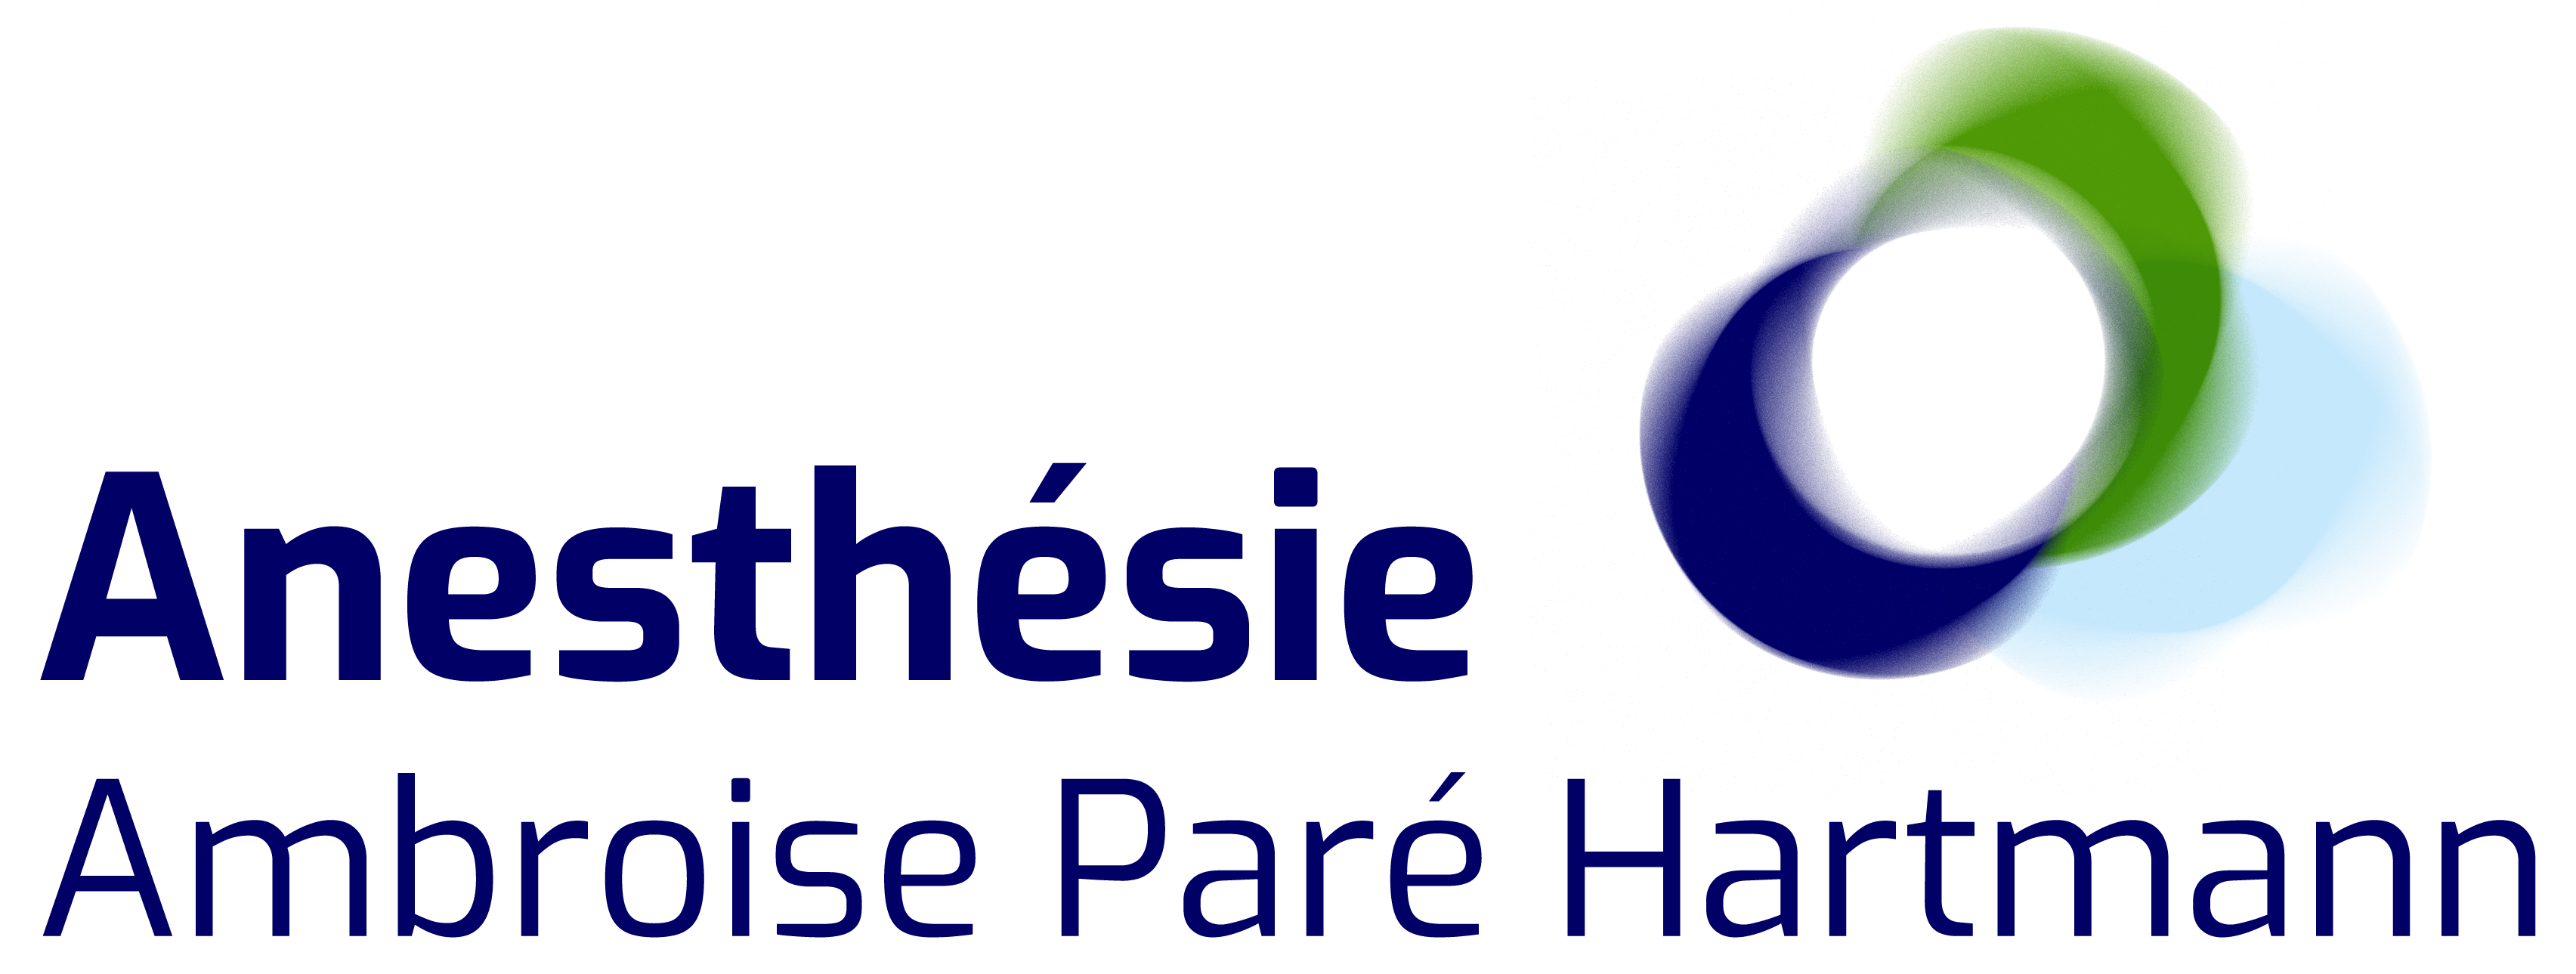 Logo Anesthésie Ambroise Paré Hartmann